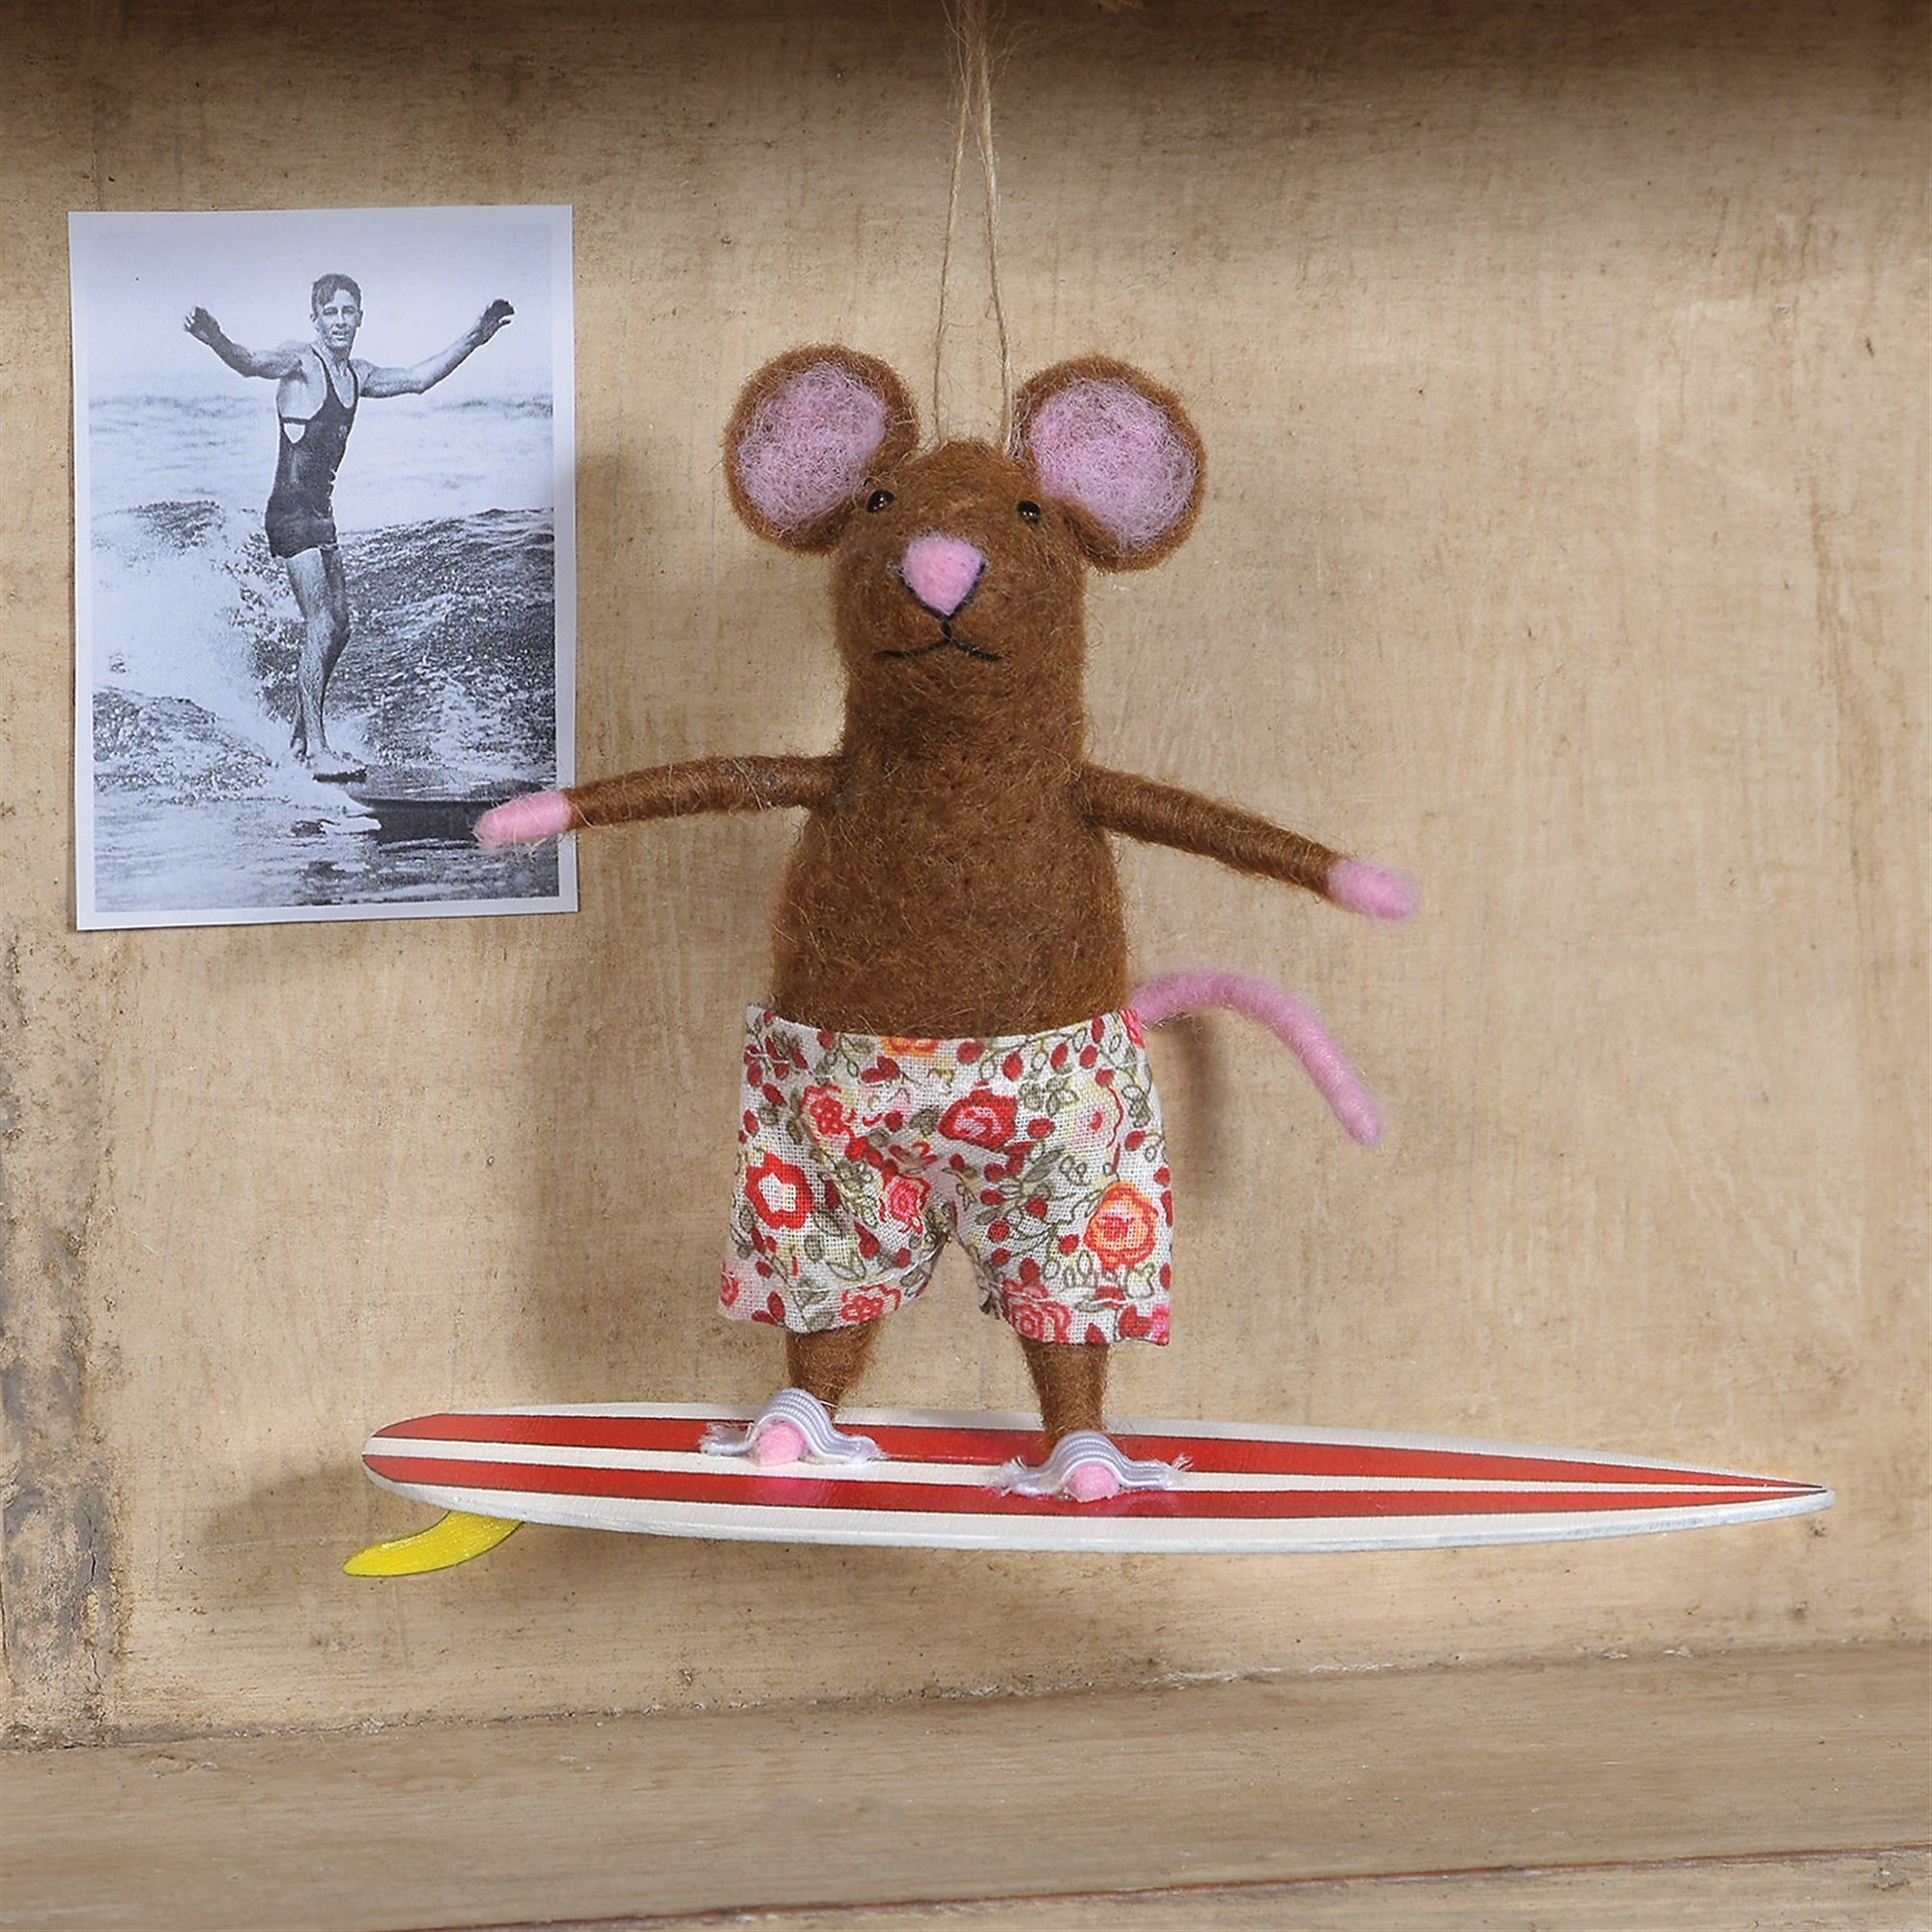 Felt Surfer Mouse Ornament